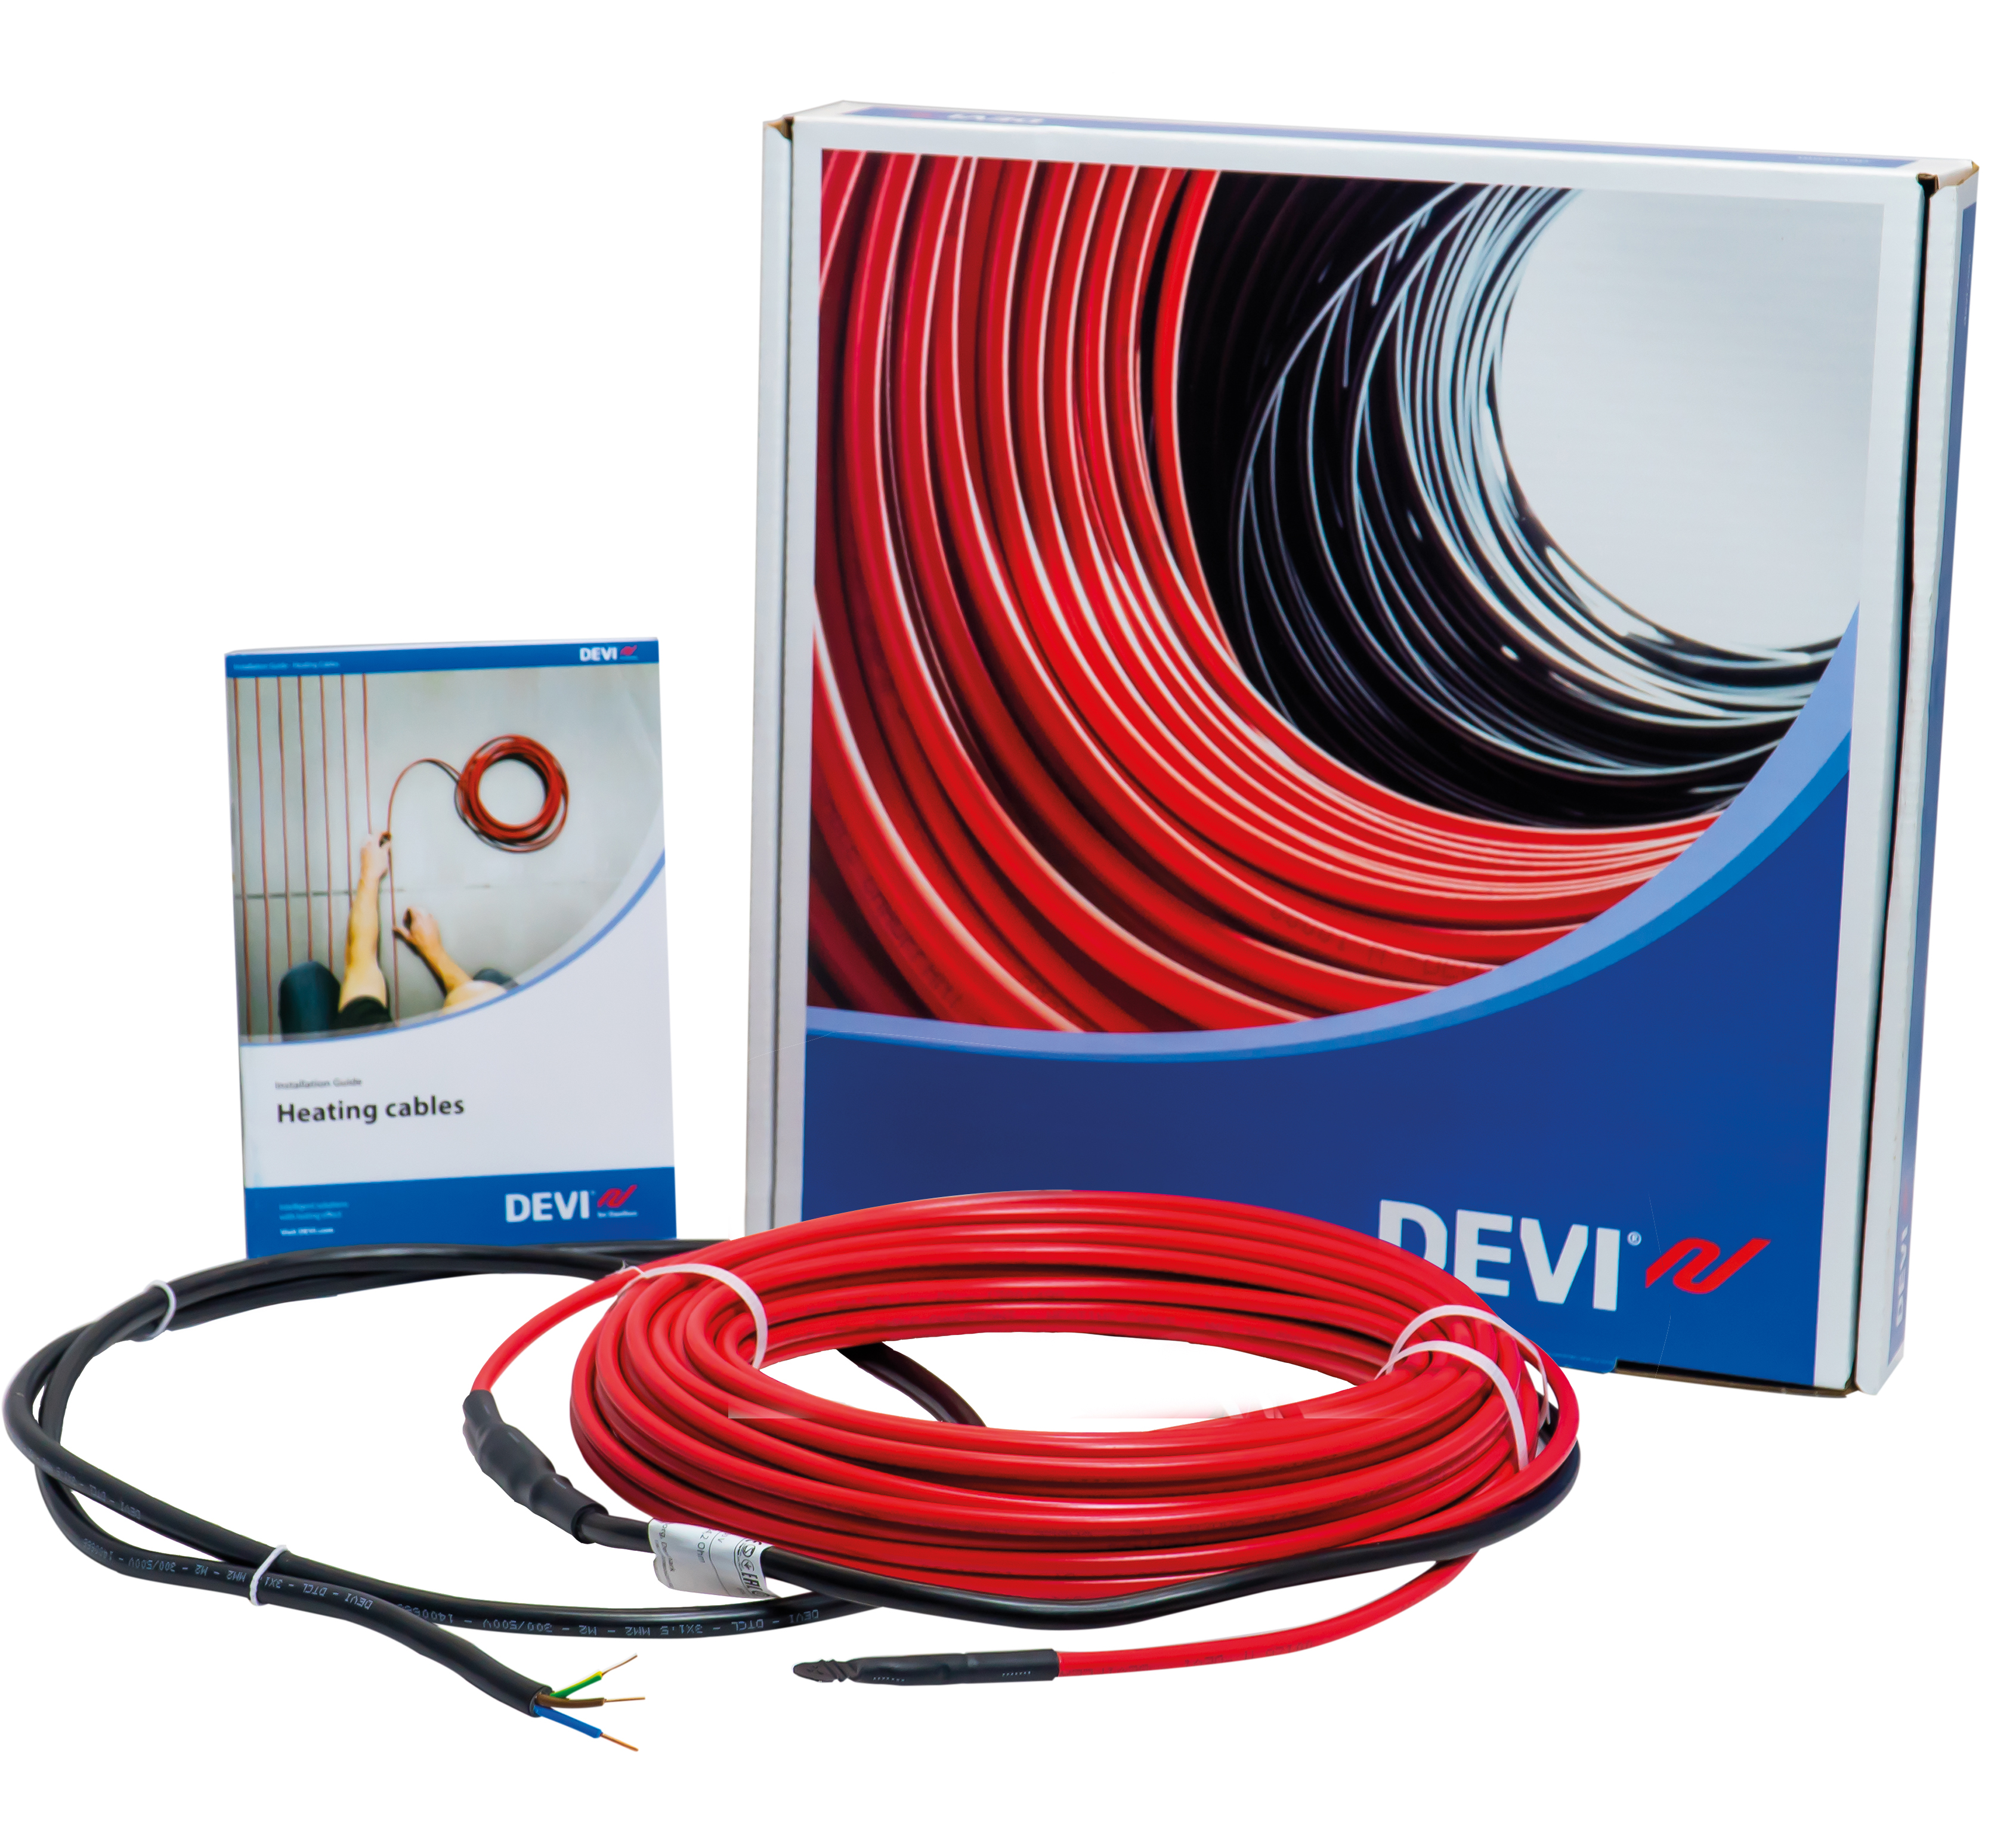 Купить кабель devi для теплого пола Devi DEVIFlex 18T 7м (140F1235) в Киеве